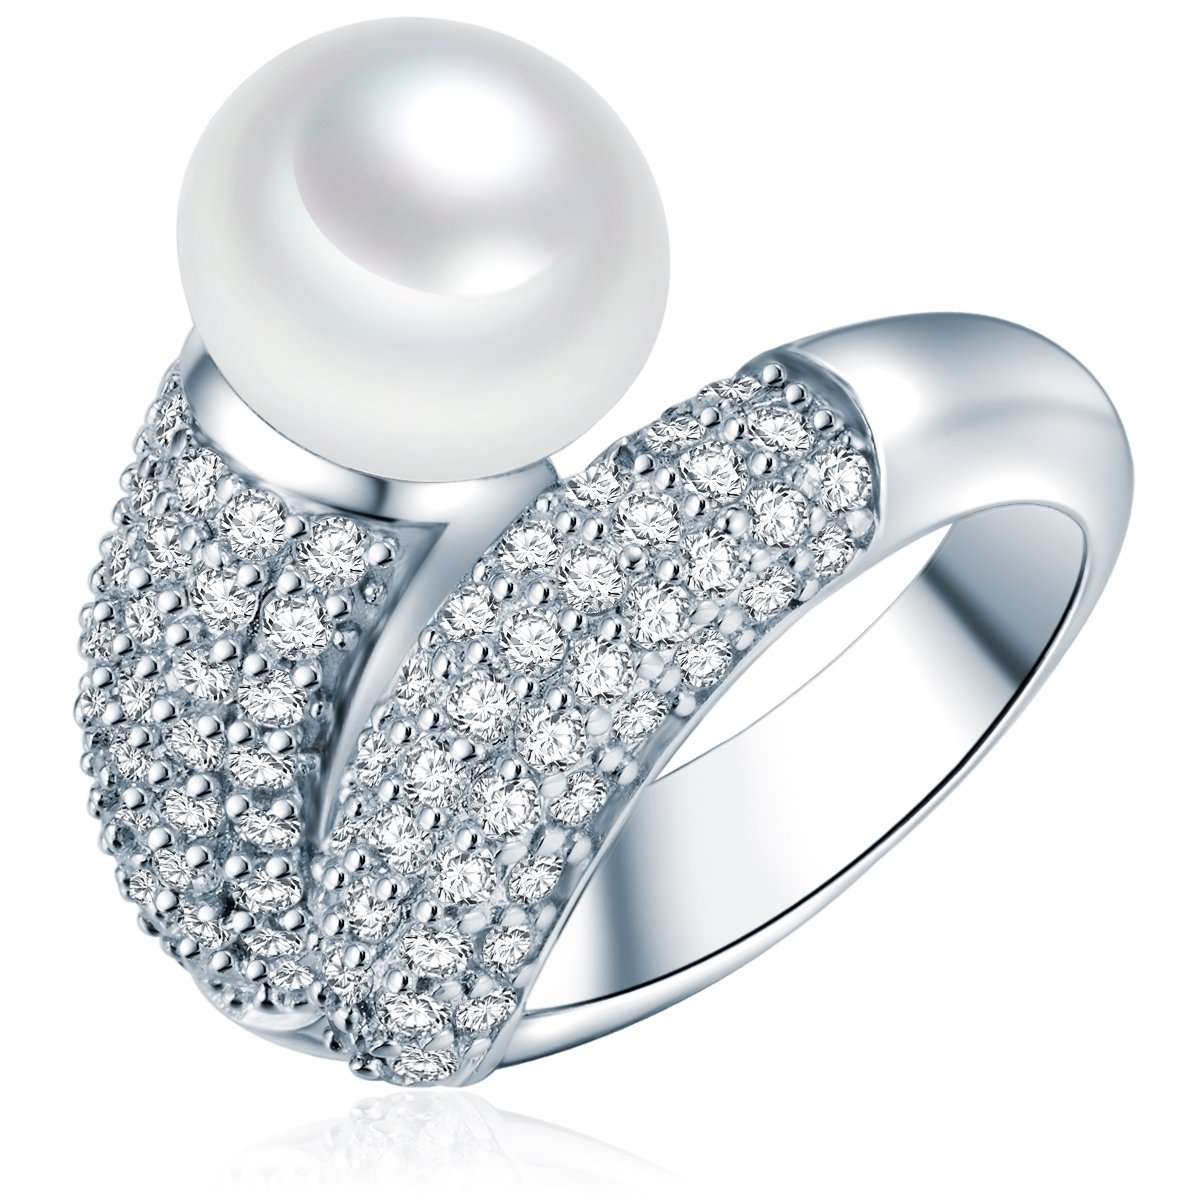 Valero Pearls Damen-Ring Hochwertige Süßwasser-Zuchtperlen in ca. 10 mm Button weiß 925 Sterling Silber Zirkonia weiß - Perlenring mit echten Perle weiss 60201416